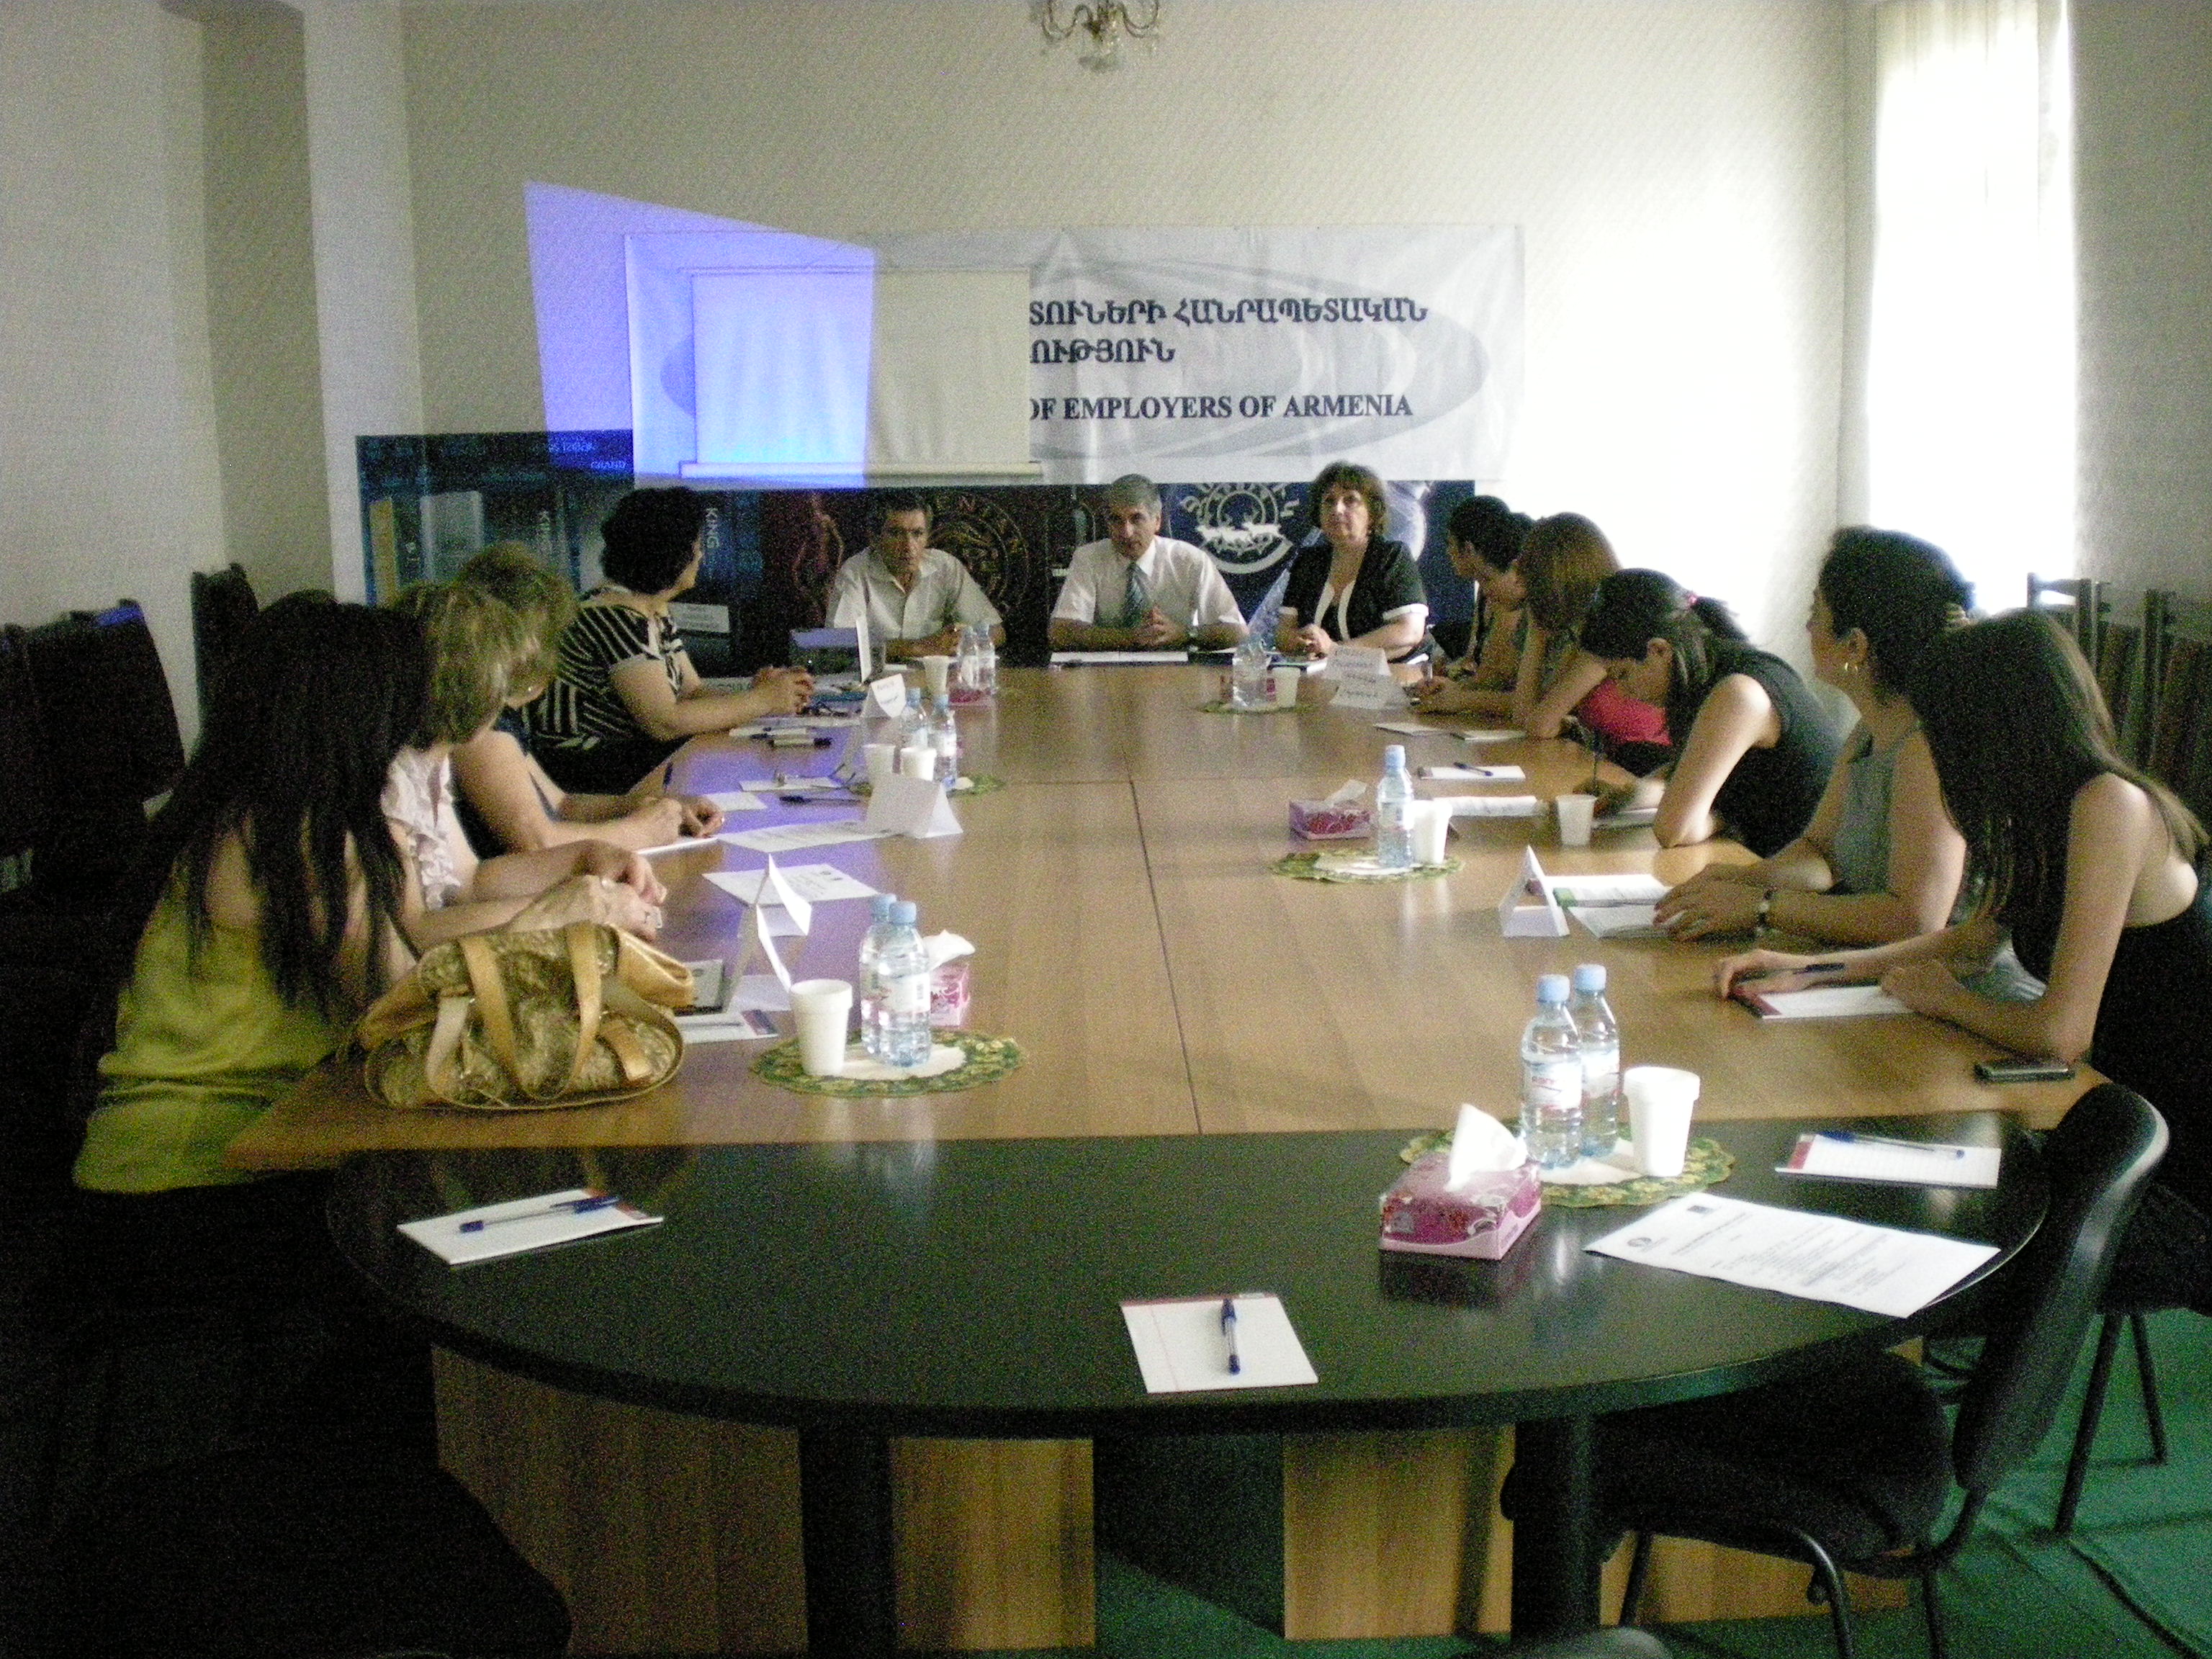 Հանդիպում Հայաստանի գործատուների հանրապետական միությունում ` Կանանց ձեռներեցության զարգացման ծրագրի շրջանակներում